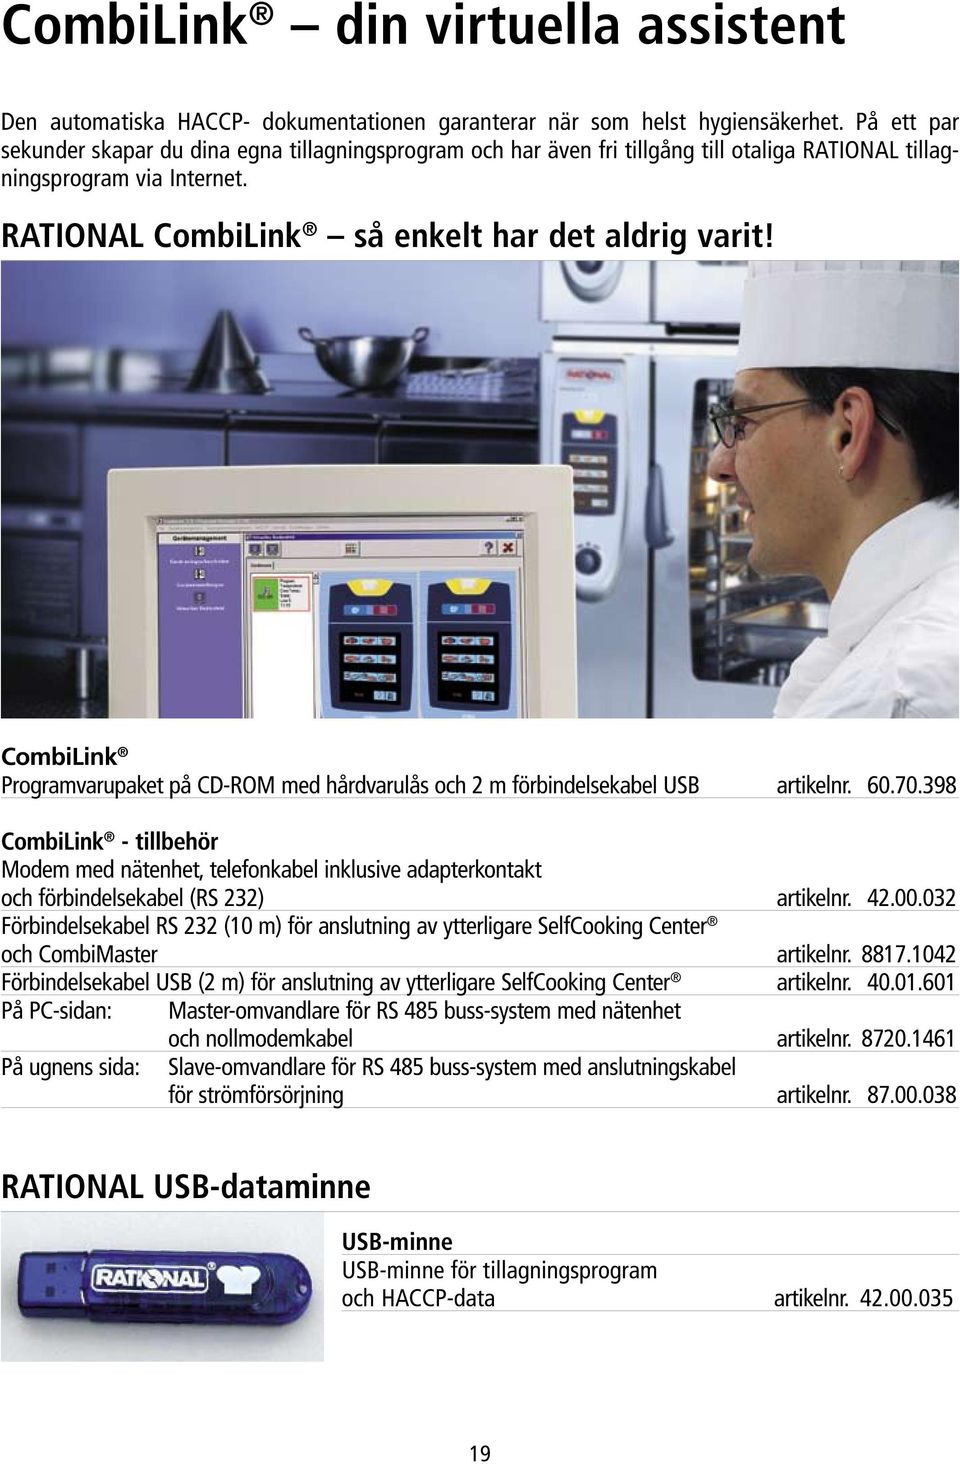 CombiLink Programvarupaket på CD-ROM med hårdvarulås och 2 m förbindelsekabel USB artikelnr. 60.70.